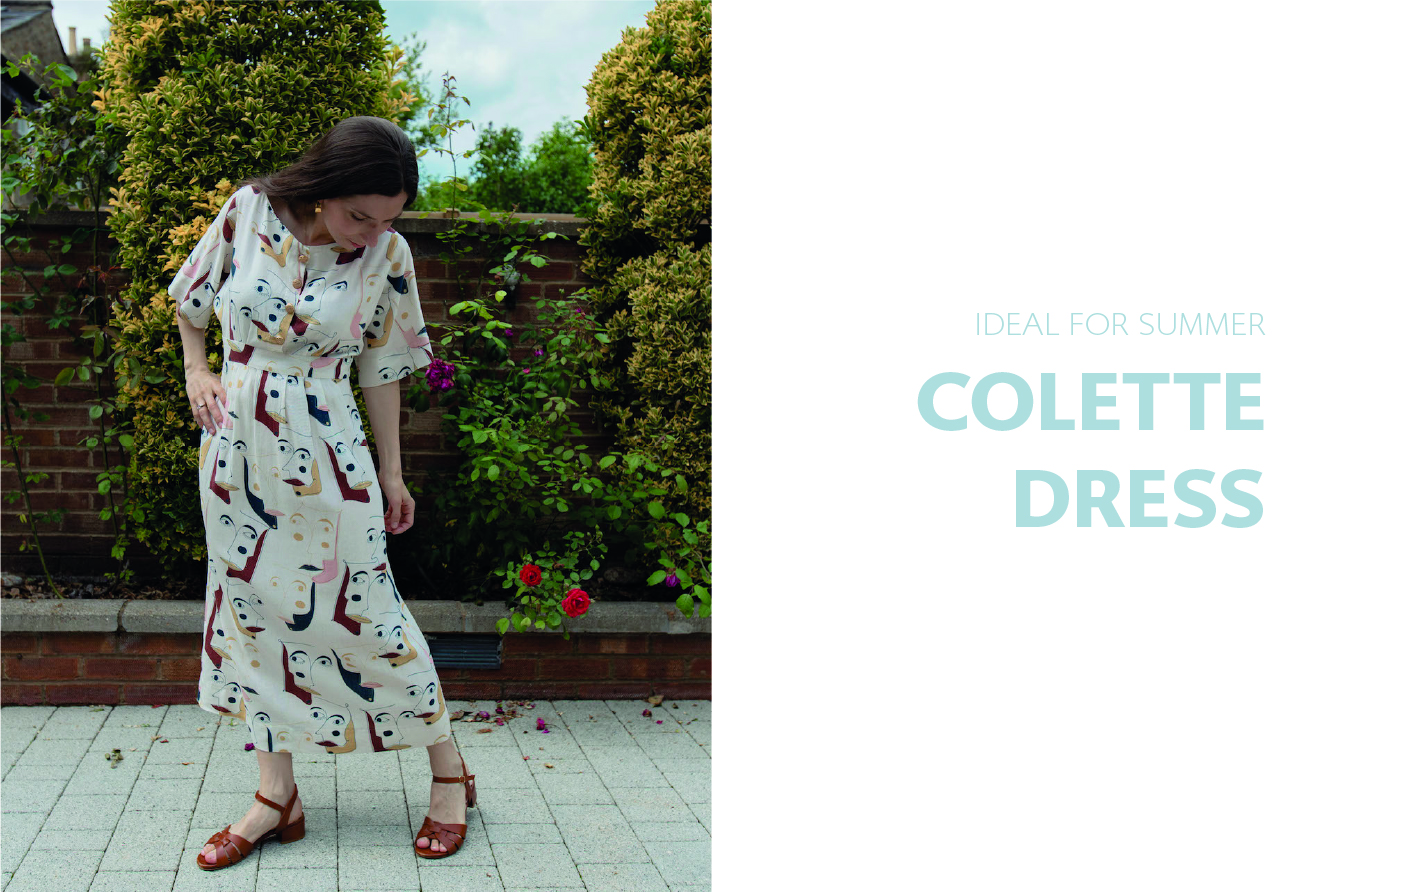 Colette dress pattern ideal for summer